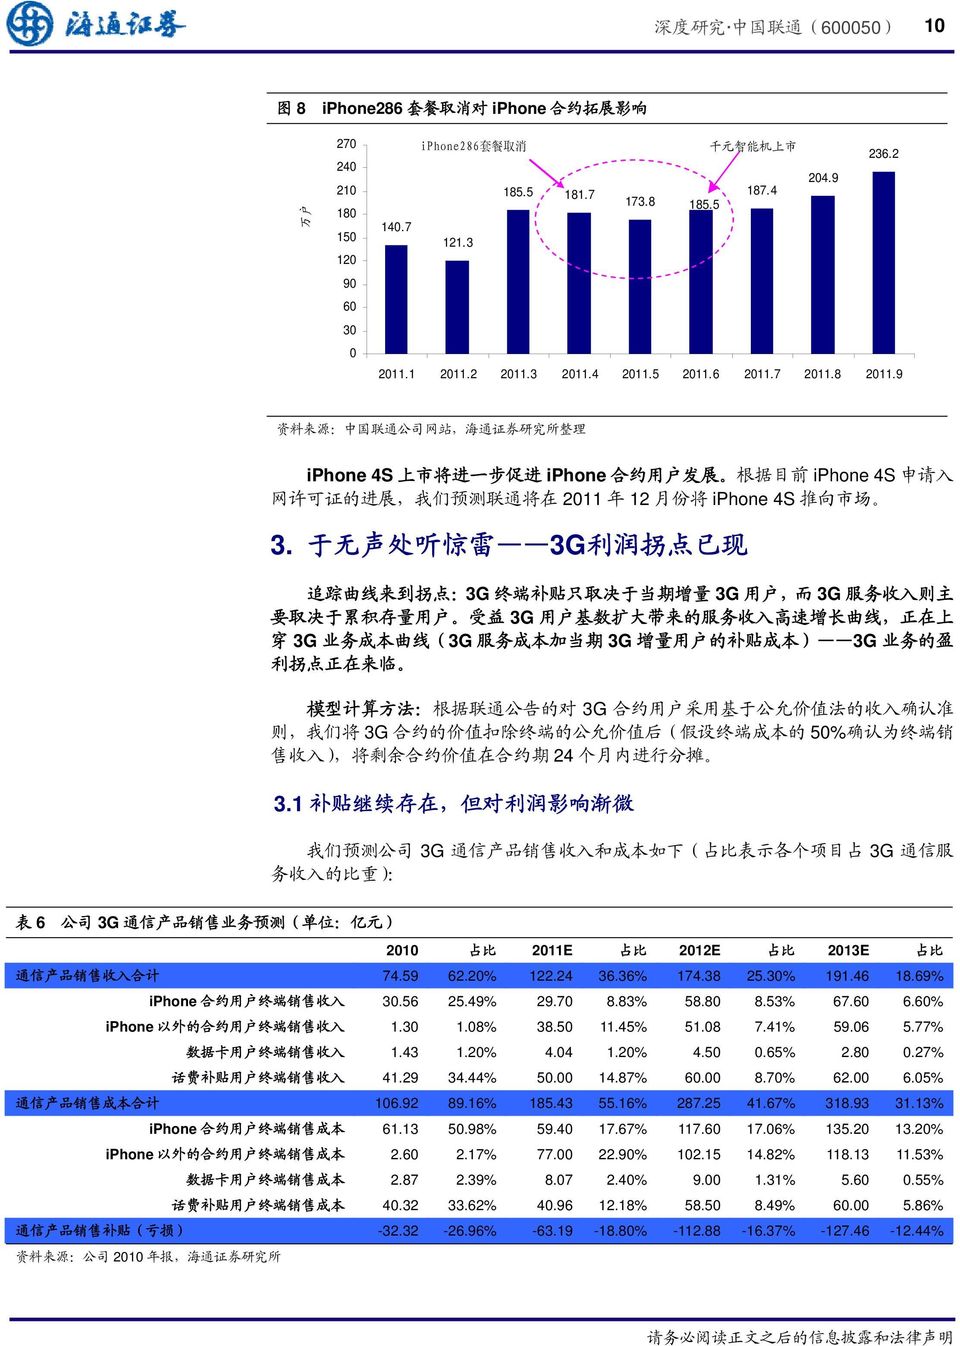 9 资 料 来 源 : 中 国 联 通 公 司 网 站, 海 通 证 券 研 究 所 整 理 iphone 4S 上 市 将 进 一 步 促 进 iphone 合 约 用 户 发 展 根 据 目 前 iphone 4S 申 请 入 网 许 可 证 的 进 展, 我 们 预 测 联 通 将 在 2011 年 12 月 份 将 iphone 4S 推 向 市 场 3.